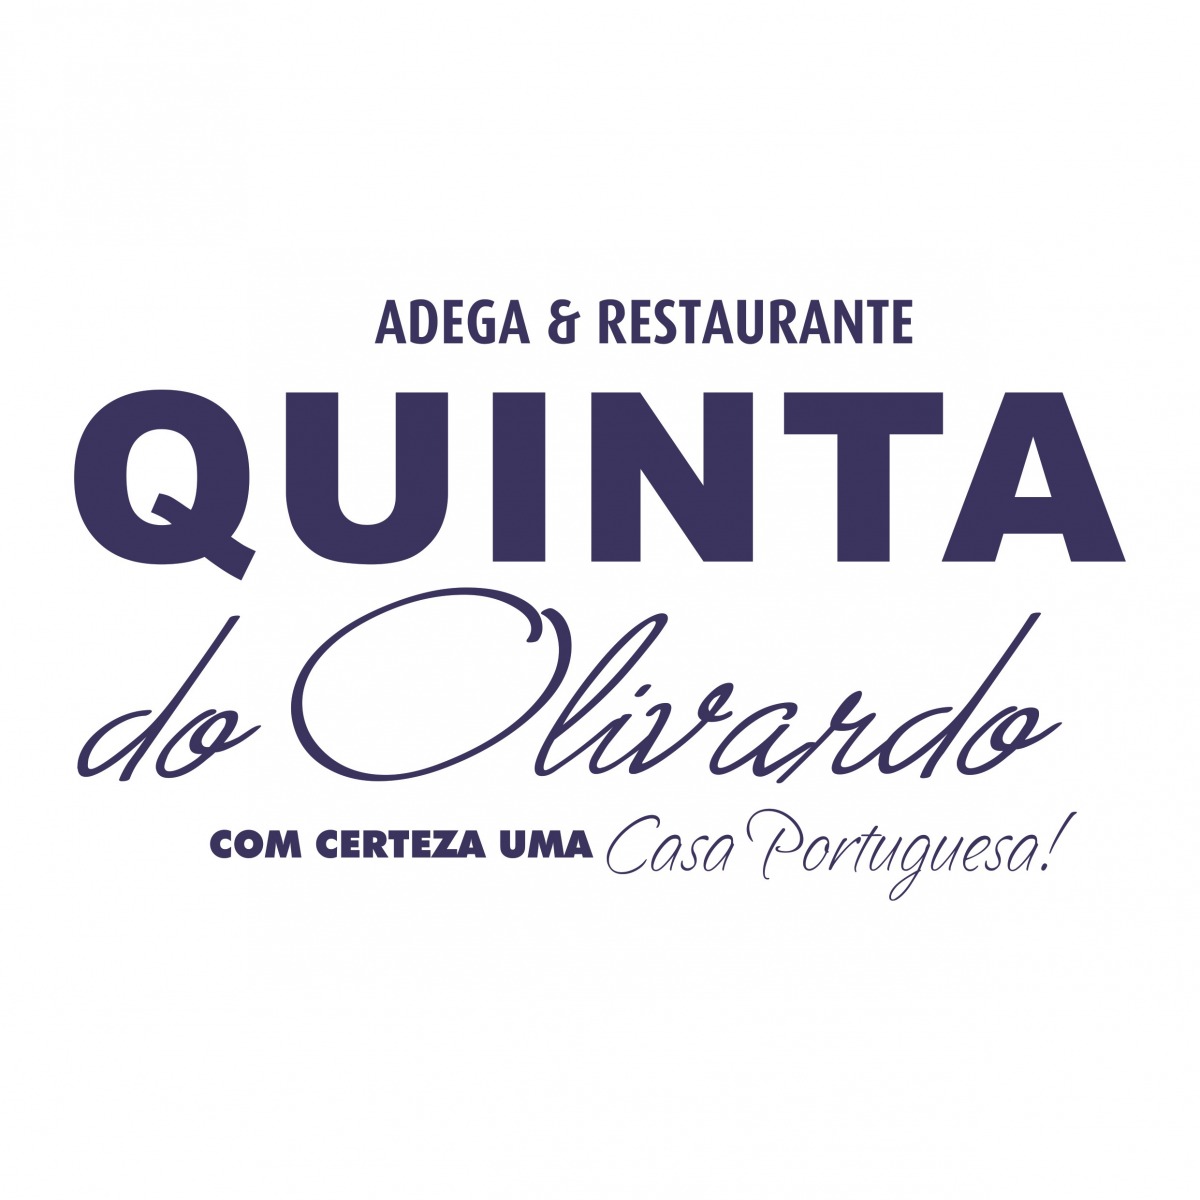 Adega e Restaurante Quinta do Olivardo - Roteiro do Vinho - São Roque